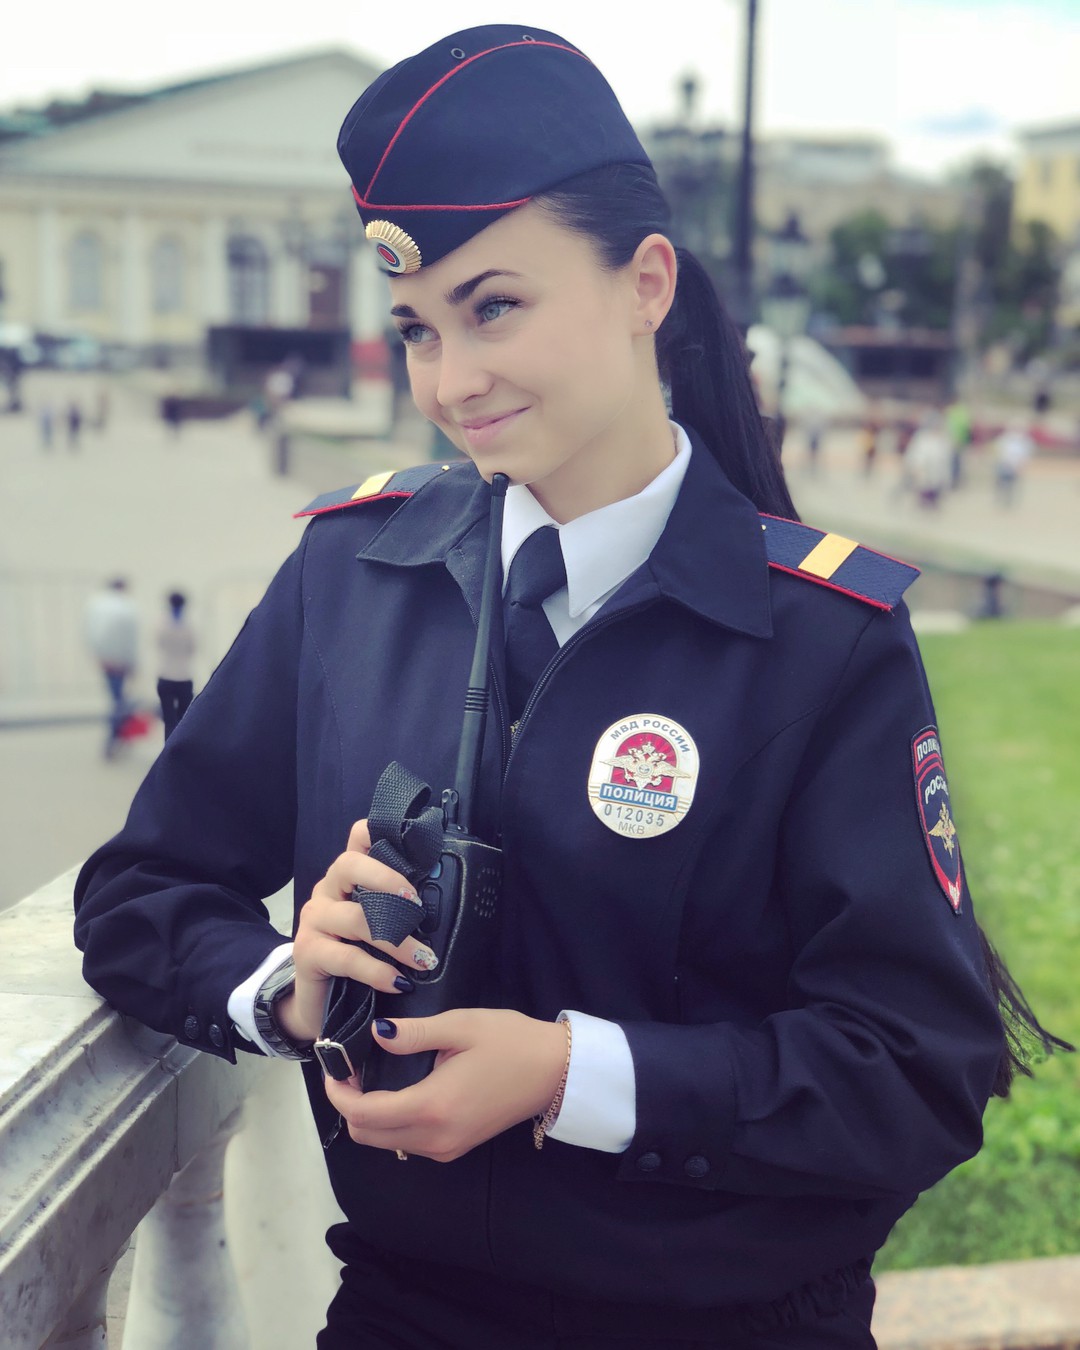 Fan bóng đá muốn vào tù sau khi chứng kiến nhan sắc xinh đẹp của nữ cảnh sát Nga - Ảnh 1.